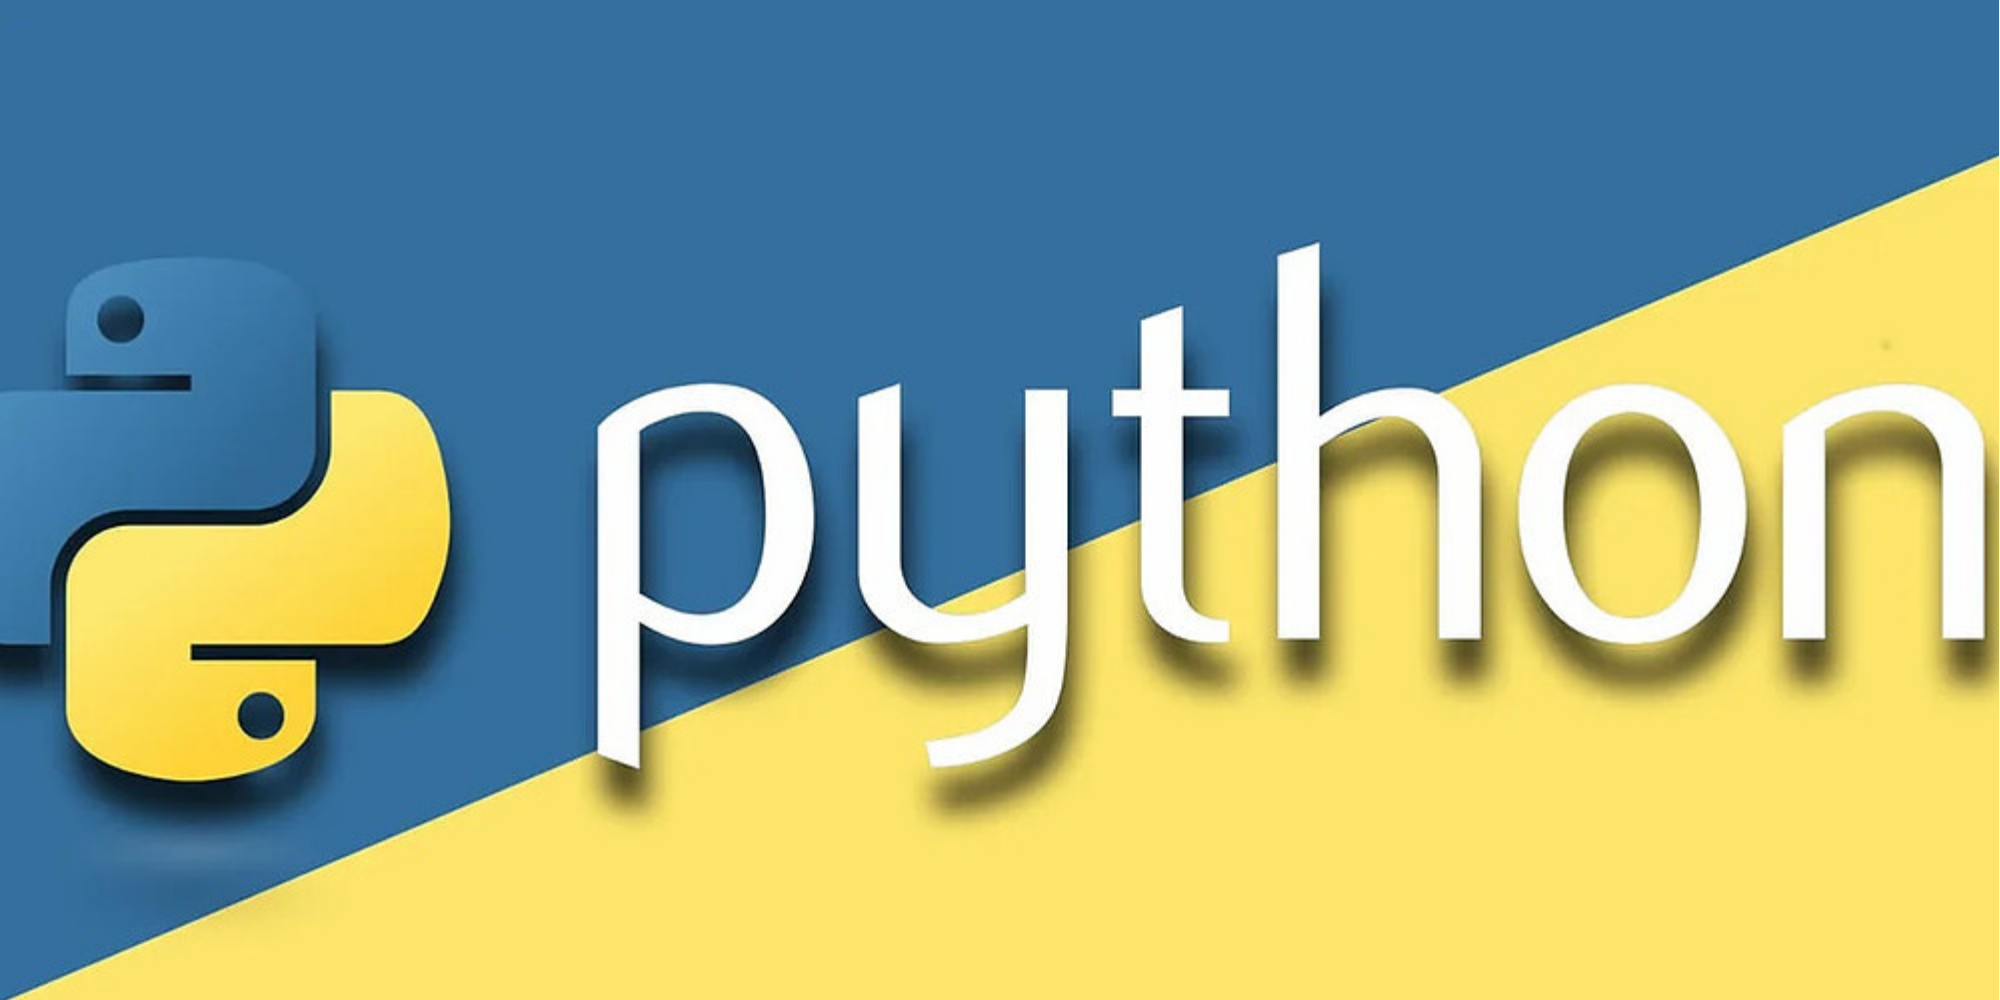 Https python 3. Python язык программирования логотип. Питон язык программирования лого. Язык программирования phuton логотип. Python картинки.